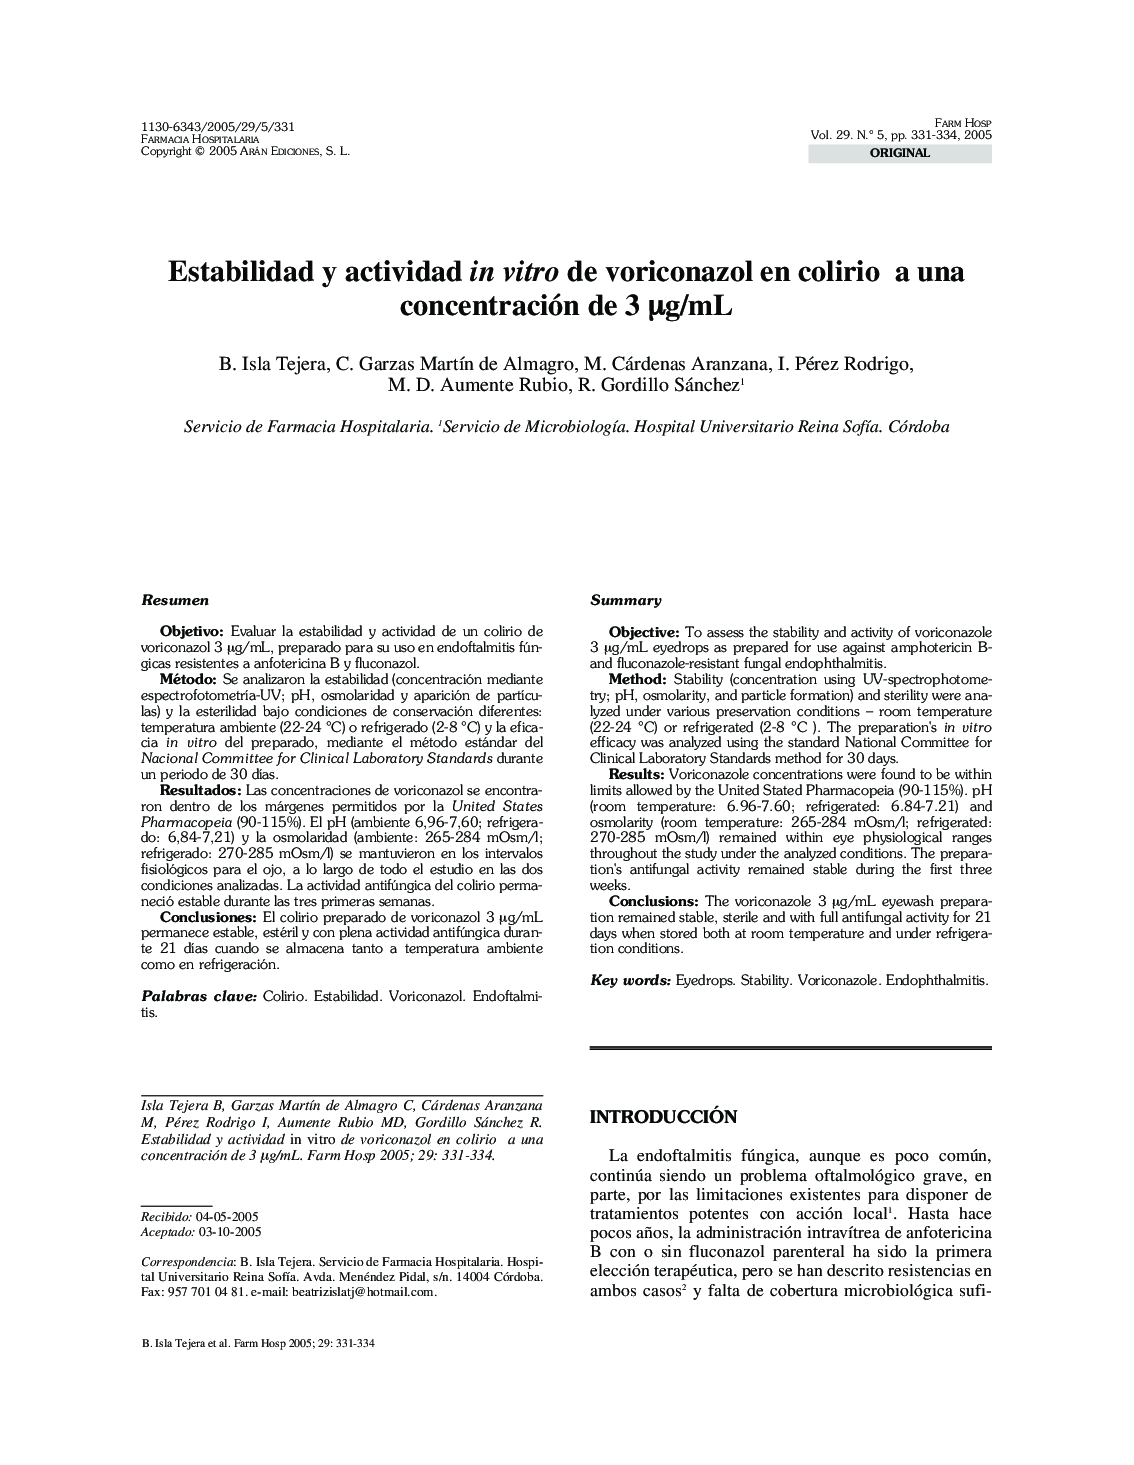 Estabilidad y actividad in vitro de voriconazol en colirio a una concentración de 3 Î¼g/mL